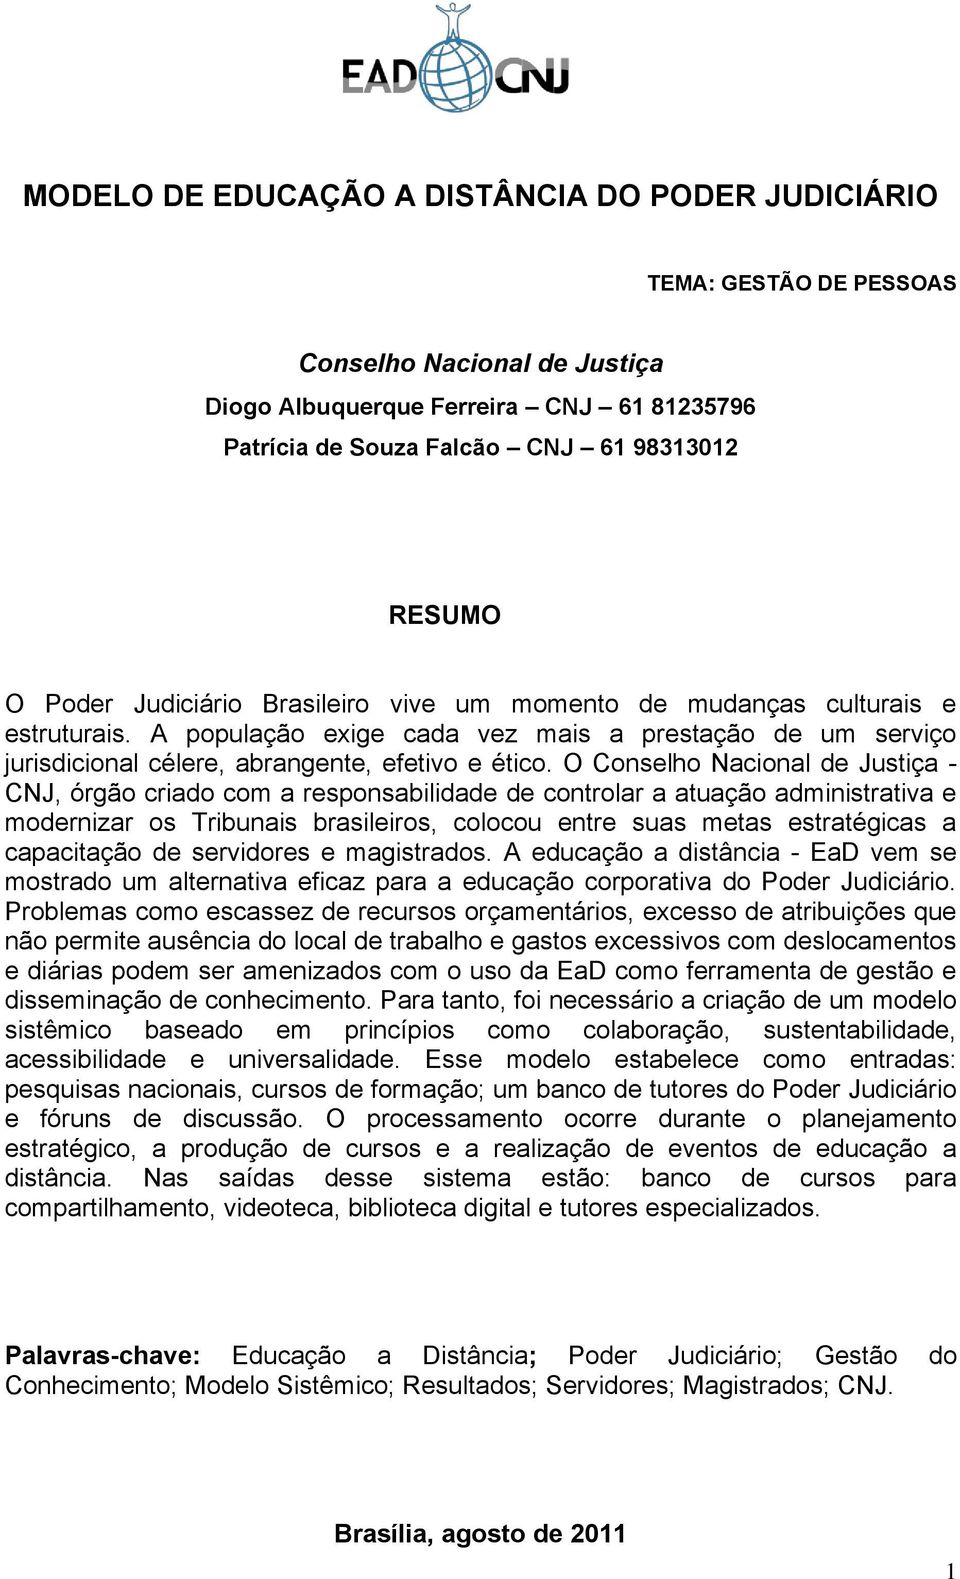 O Conselho Nacional de Justiça - CNJ, órgão criado com a responsabilidade de controlar a atuação administrativa e modernizar os Tribunais brasileiros, colocou entre suas metas estratégicas a